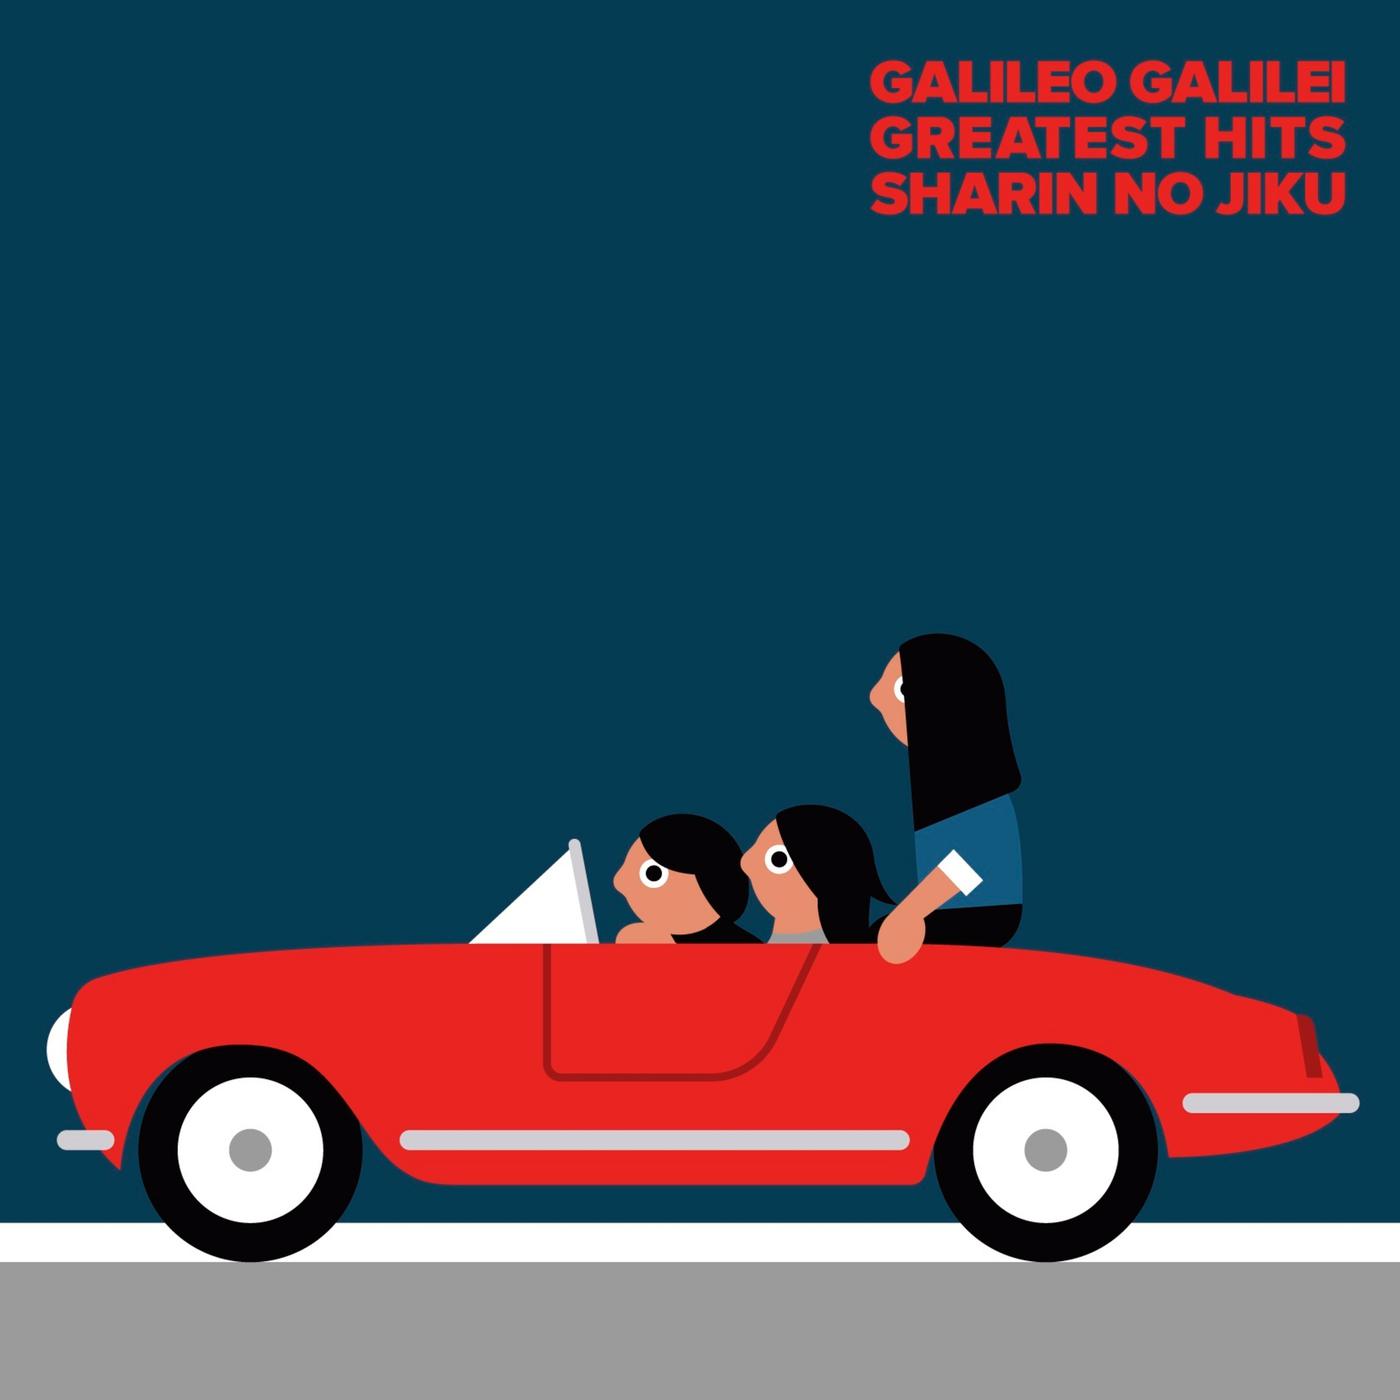 夢に唄えば歌词 歌手Galileo Galilei-专辑車輪の軸-单曲《夢に唄えば》LRC歌词下载